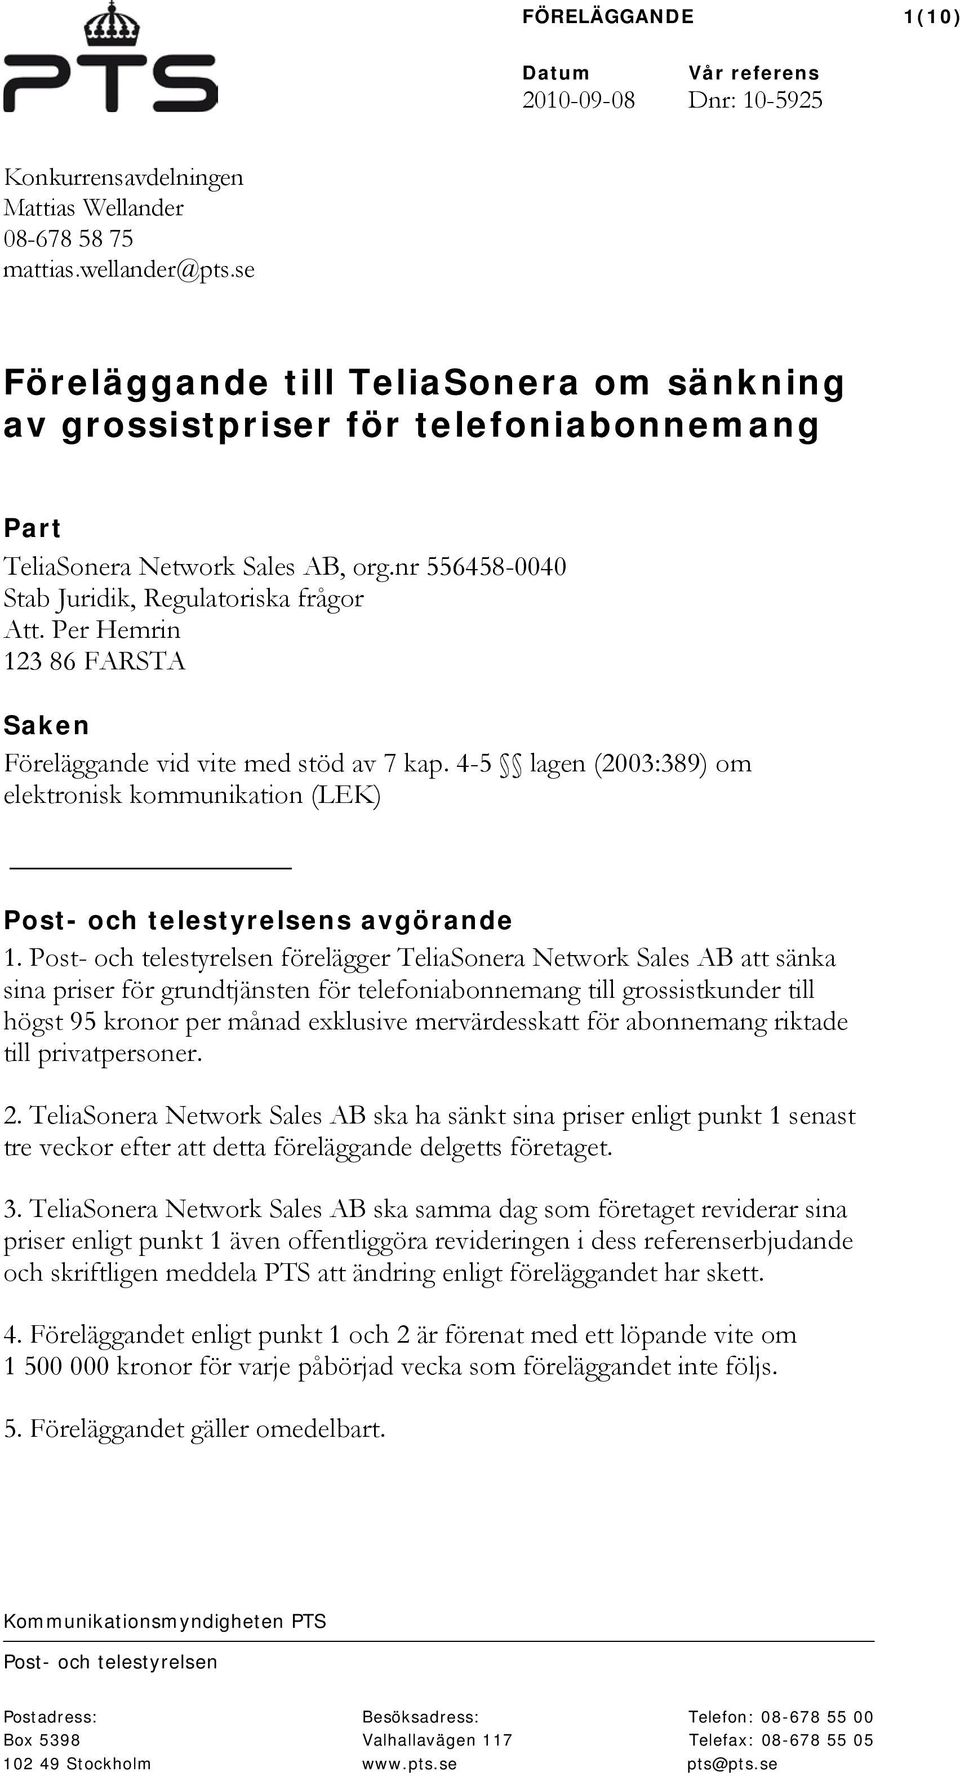 Per Hemrin 123 86 FARSTA Saken Föreläggande vid vite med stöd av 7 kap. 4-5 lagen (2003:389) om elektronisk kommunikation (LEK) Post- och telestyrelsens avgörande 1.